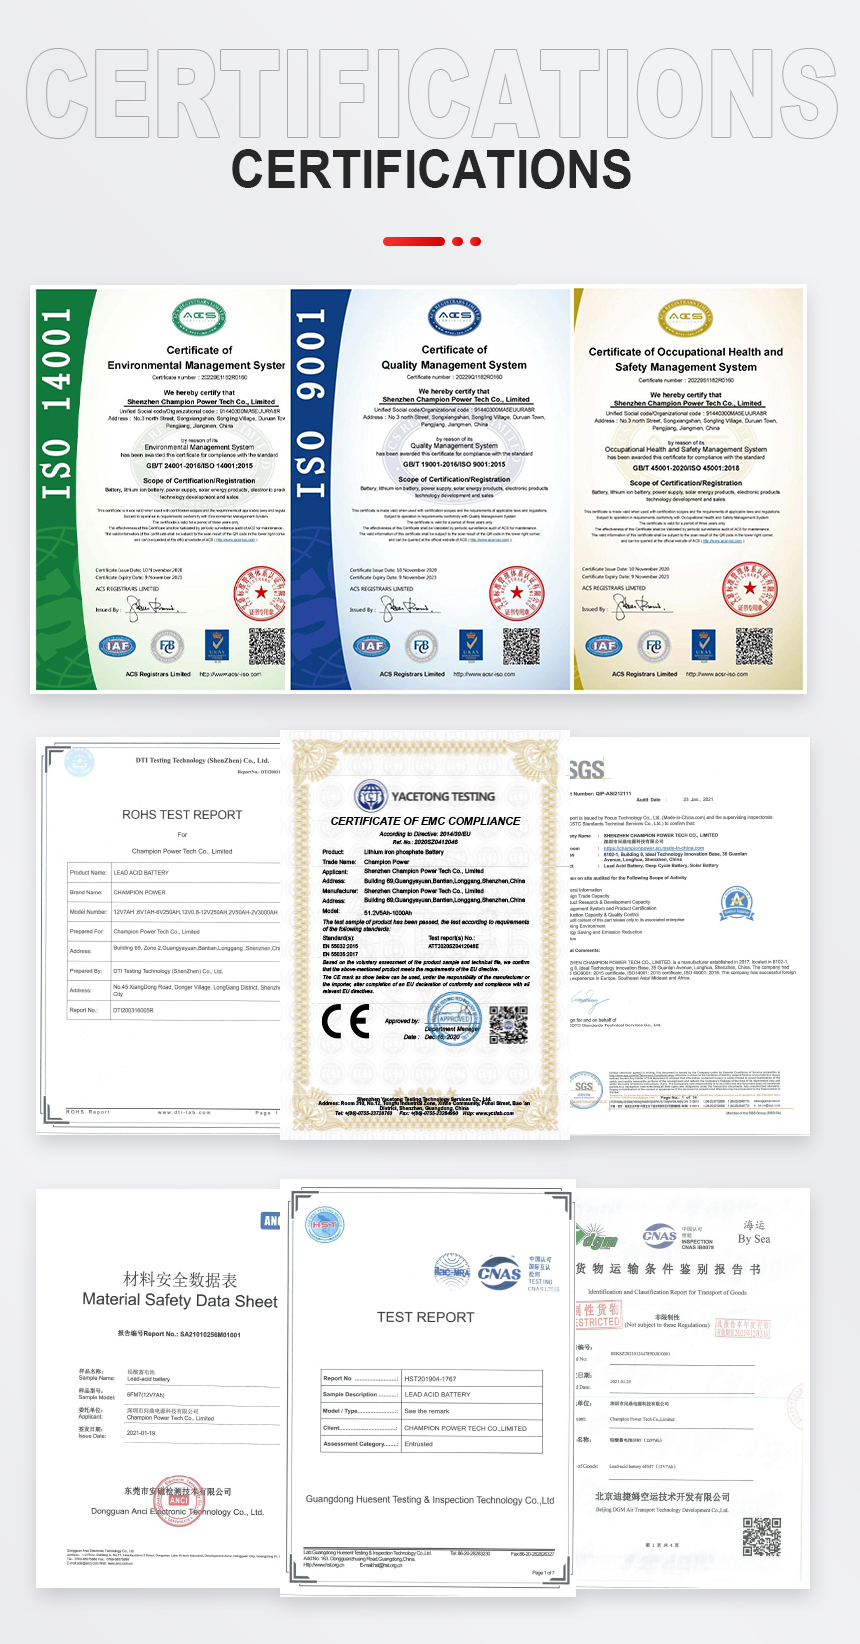 6V9.0Ah Certifications